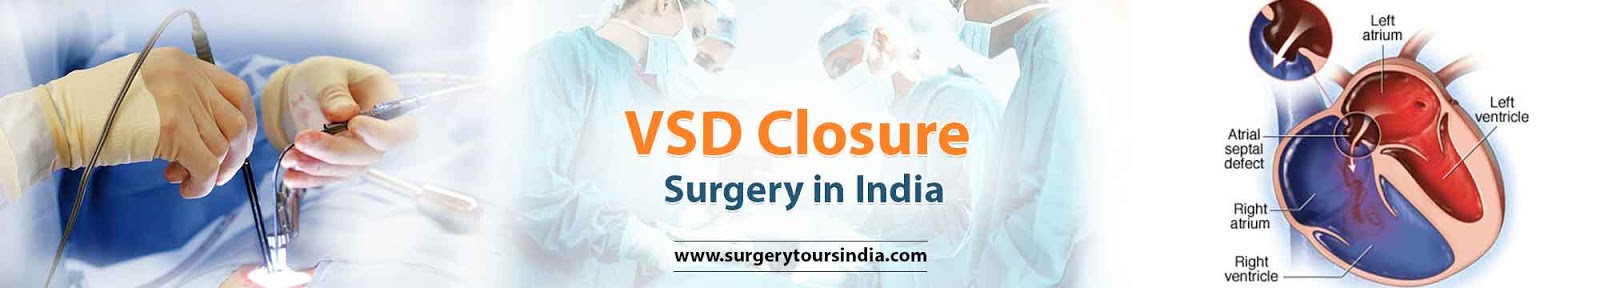 VSD Closure Surgery  India